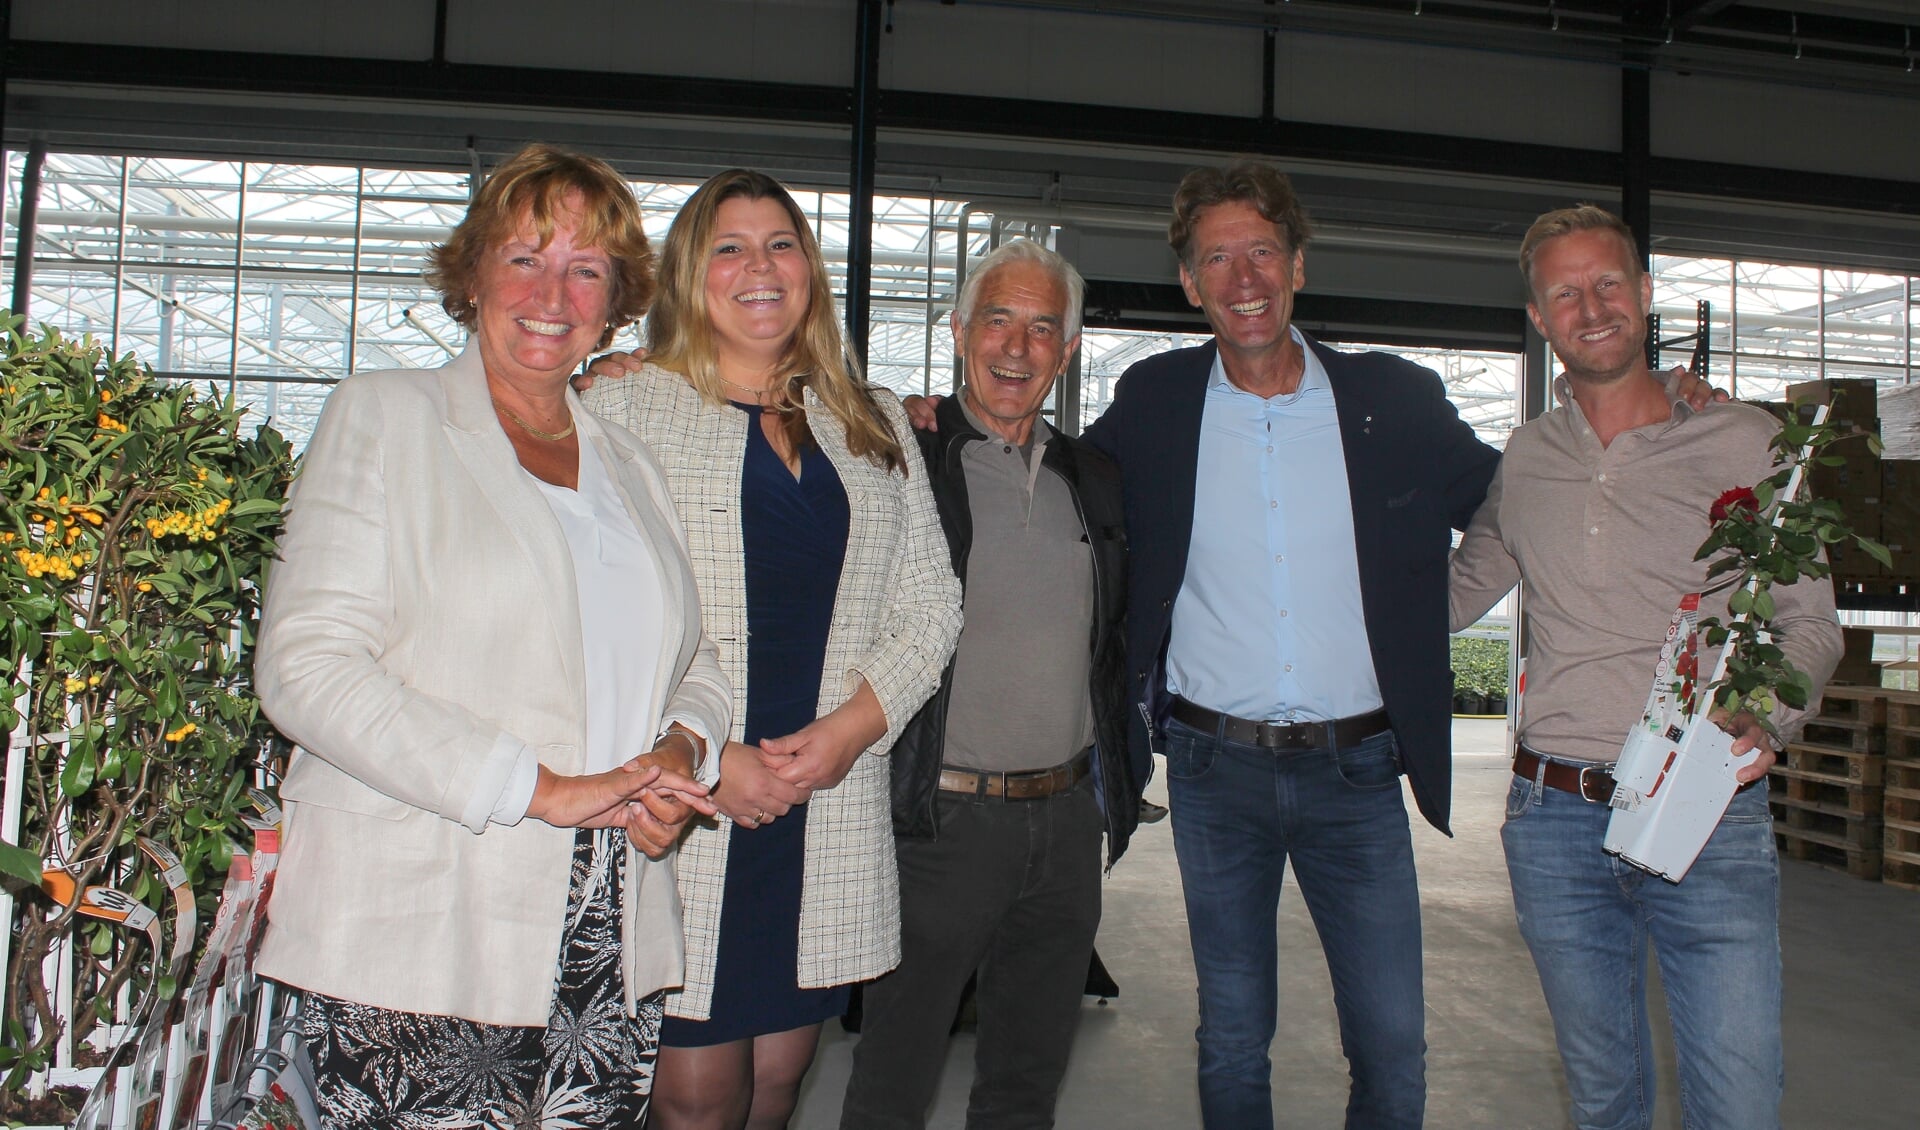 Burgemeester Liesbeth Spies en wethouder Anouk Noordermeer feliciteren SIem Hoogeveen en Bob Hoogerdijk met hun duurzame bedrijfsuitbreiding. In het midden Greenportvoorman Michiel Gerritsen.